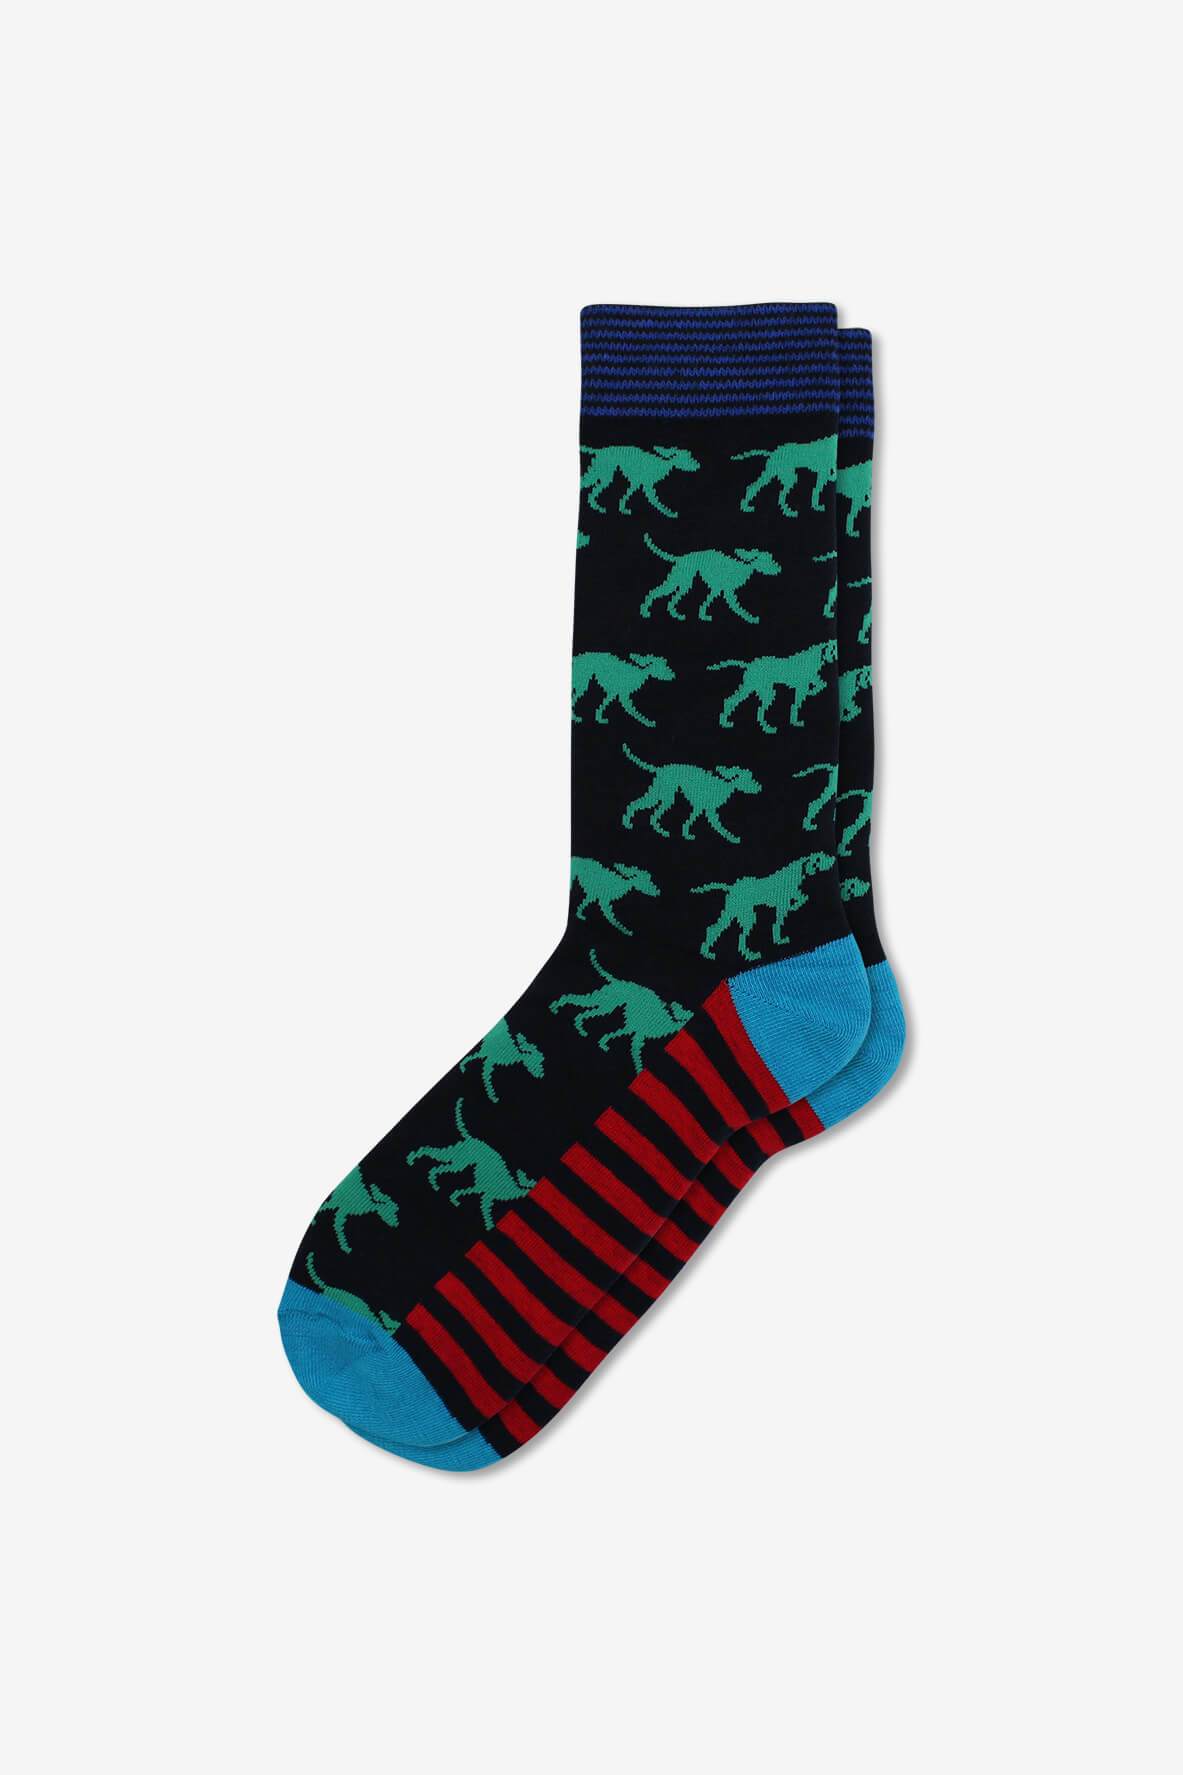 Socks IMG_5261, socks, GoTie